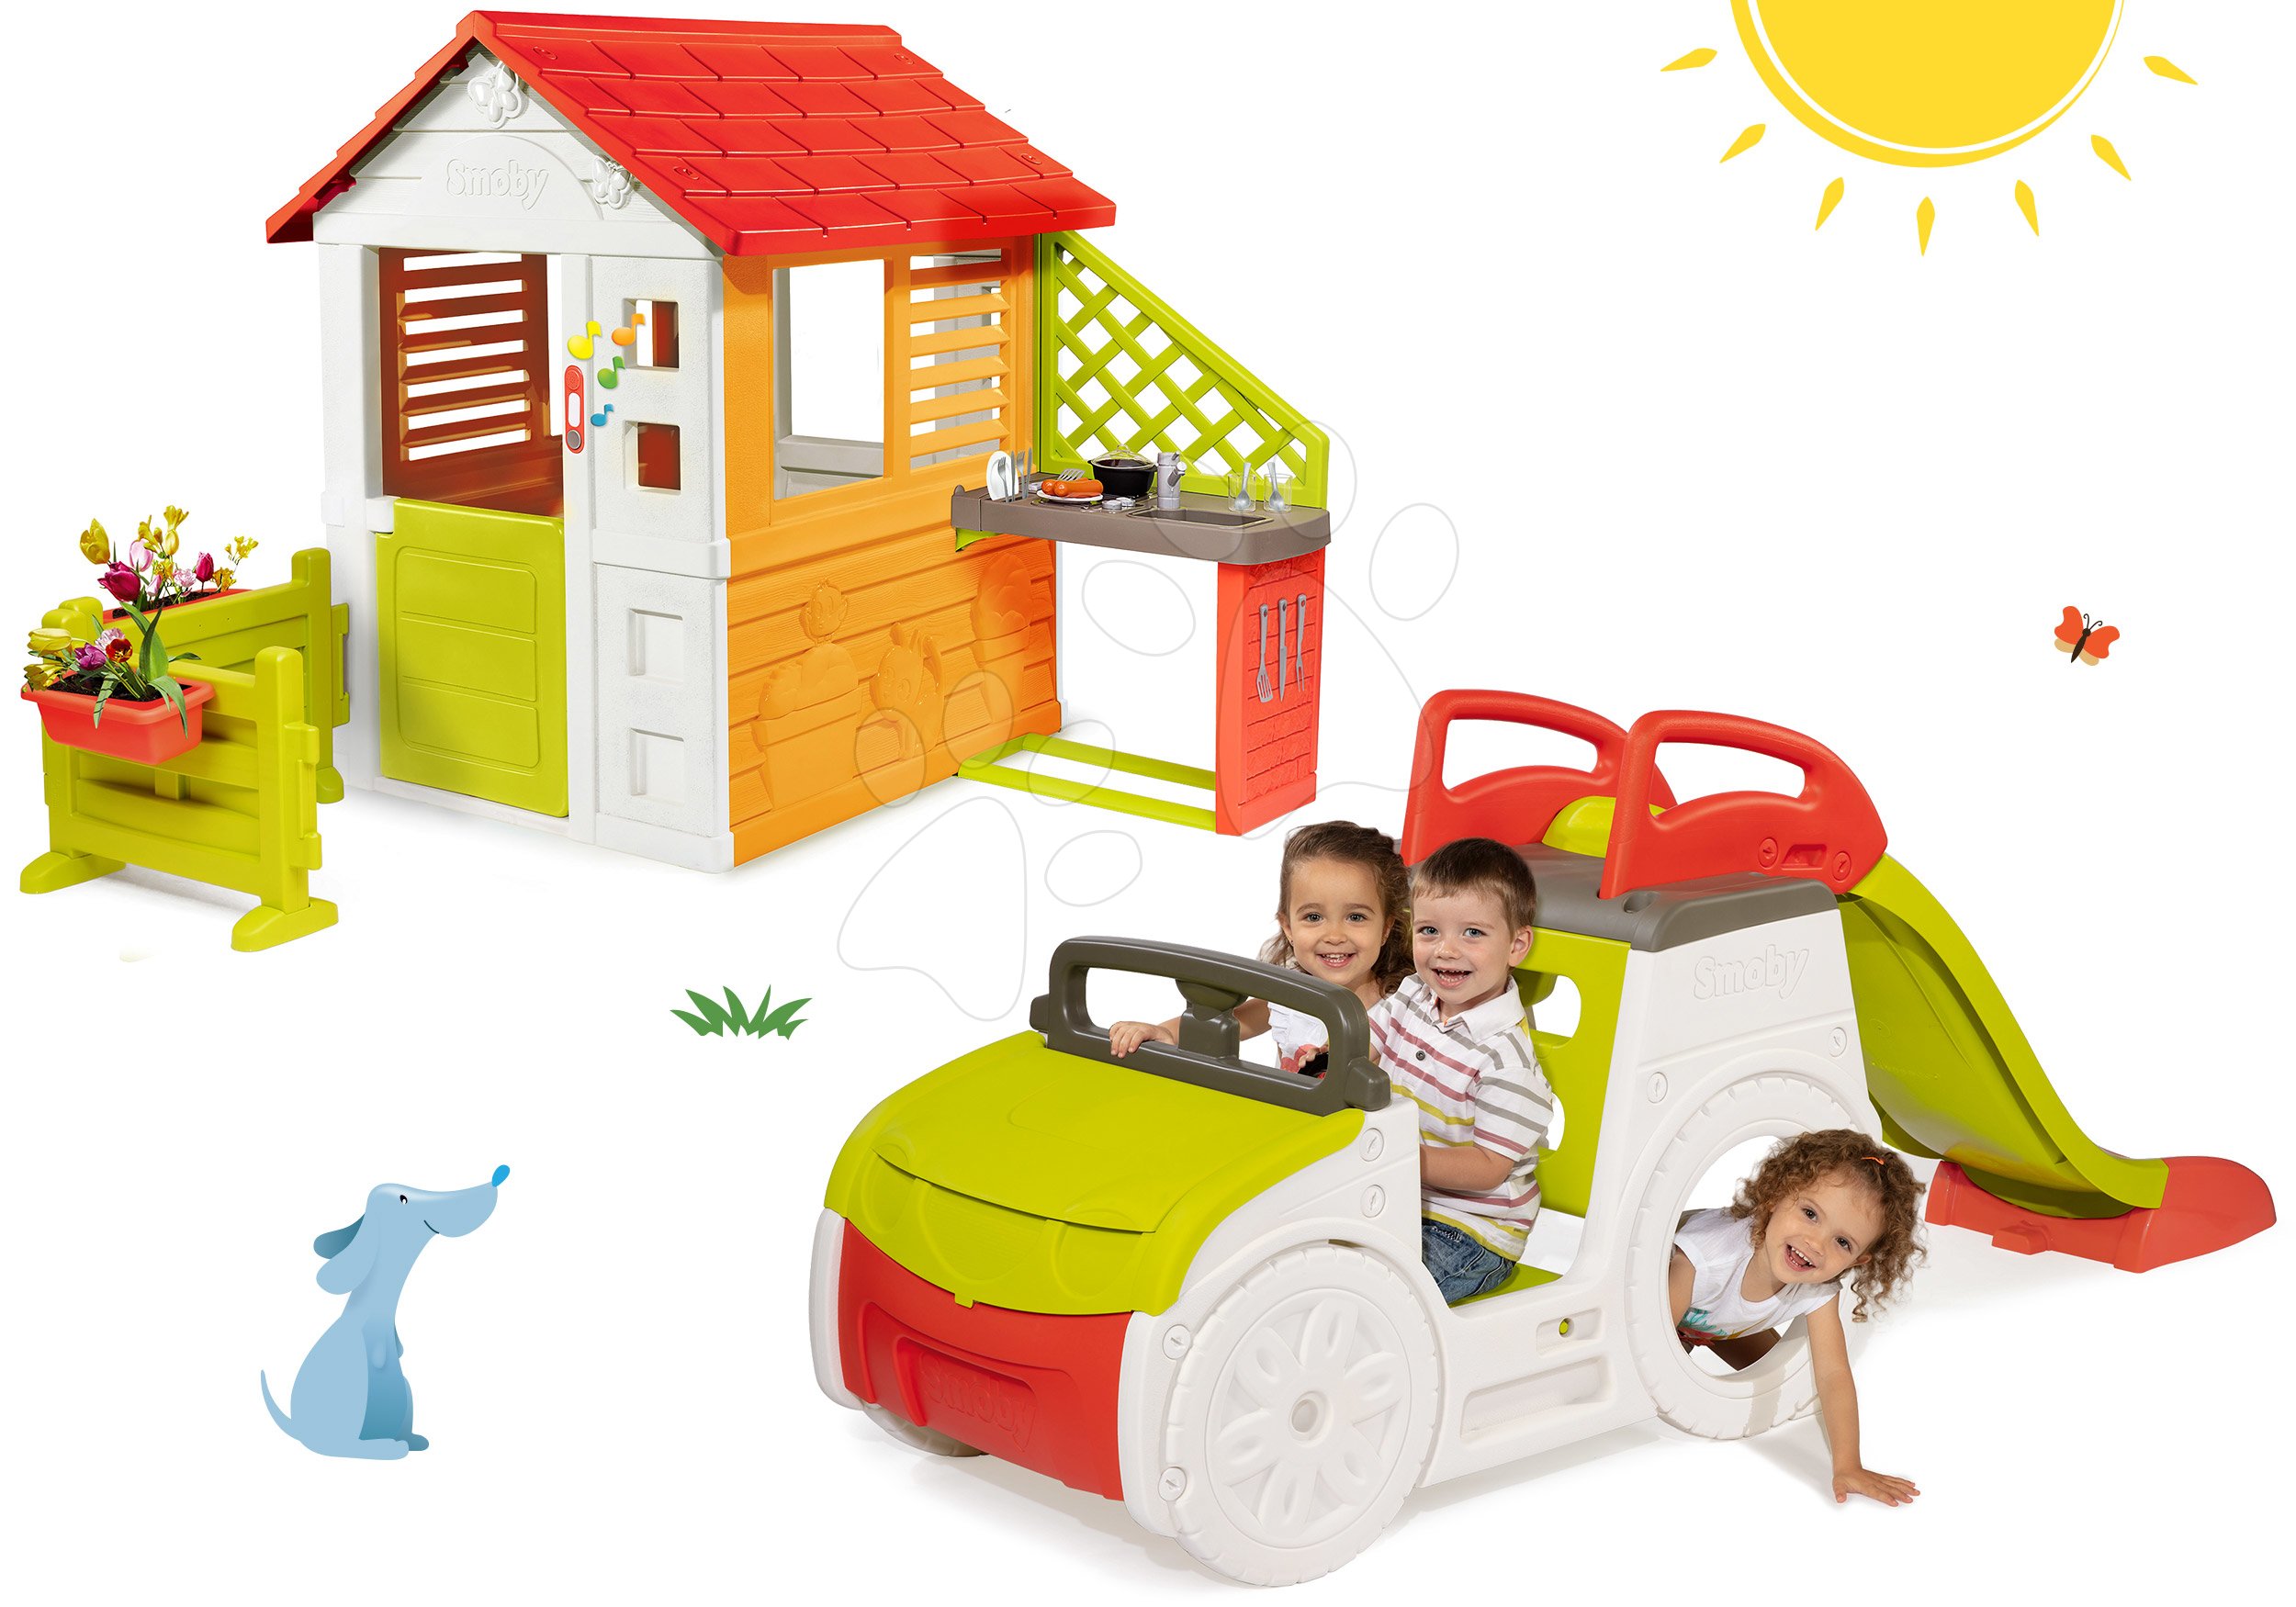 Penjalice setovi - Set penjalica Adventure Car Smoby s toboganom i kućica Sunašce Sunny sa zvoncem, kuhinjom i vrtom, od 24 mjeseca